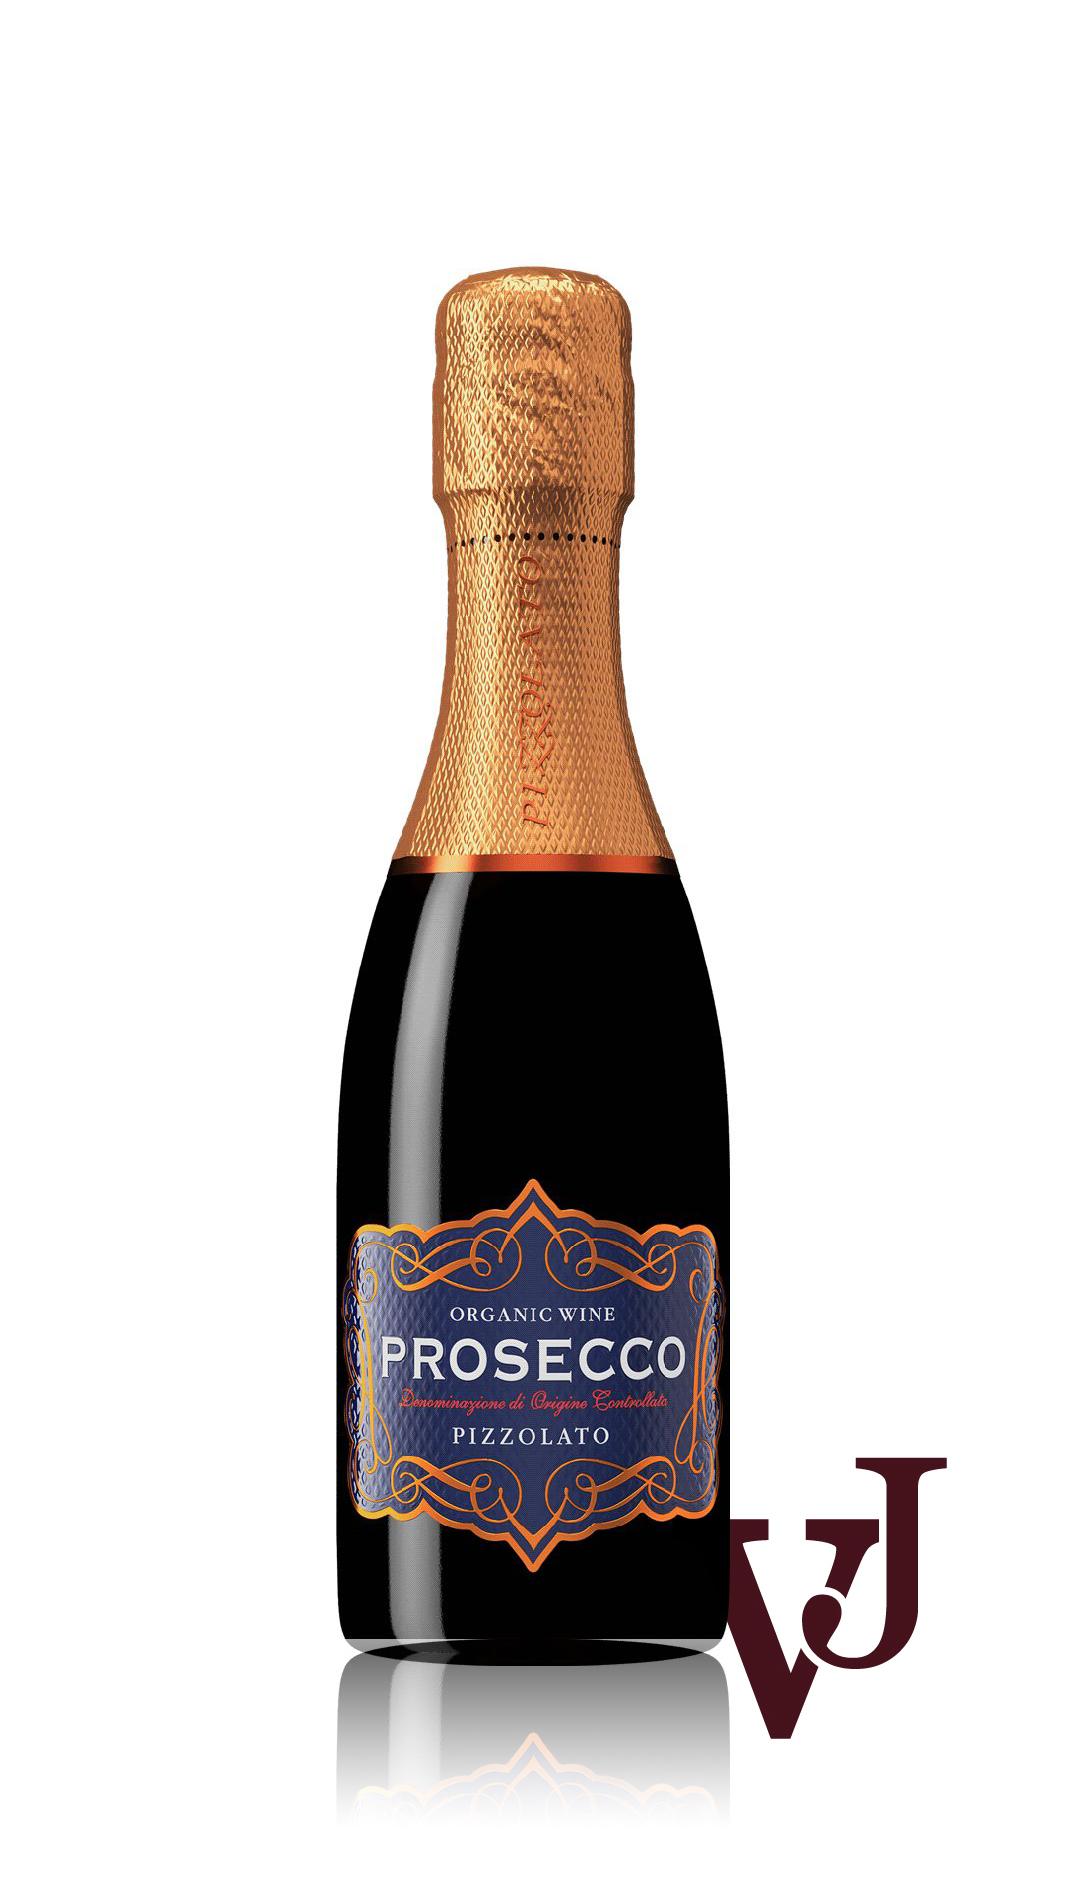 Mousserande Vin - Prosecco Pizzolato artikel nummer 787004 från producenten La Cantina Pizzolato från området Italien